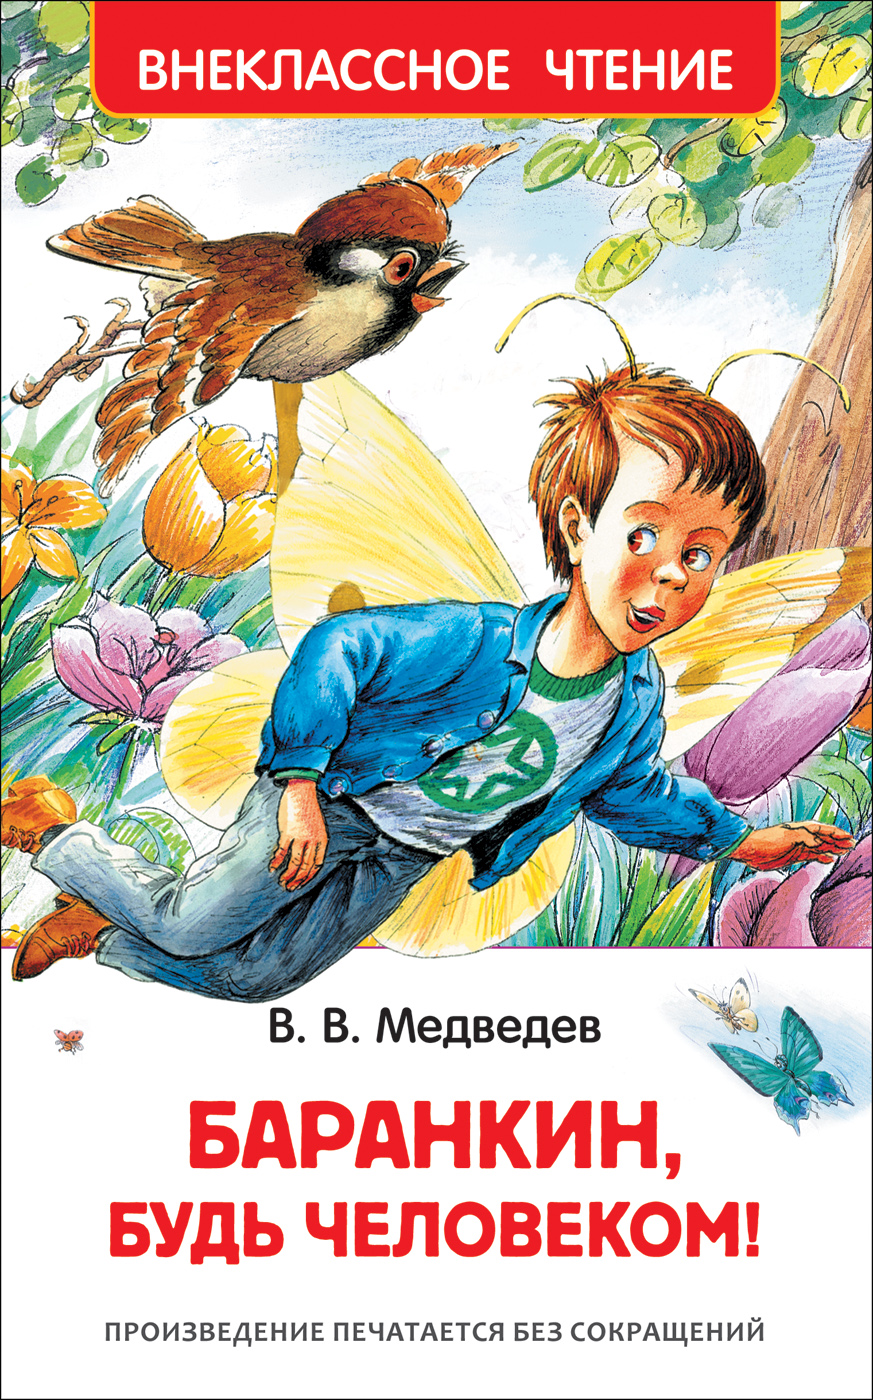 Книга 29897 "Баранкин, будь человекмо" ВЧ  Росмэн - Челябинск 